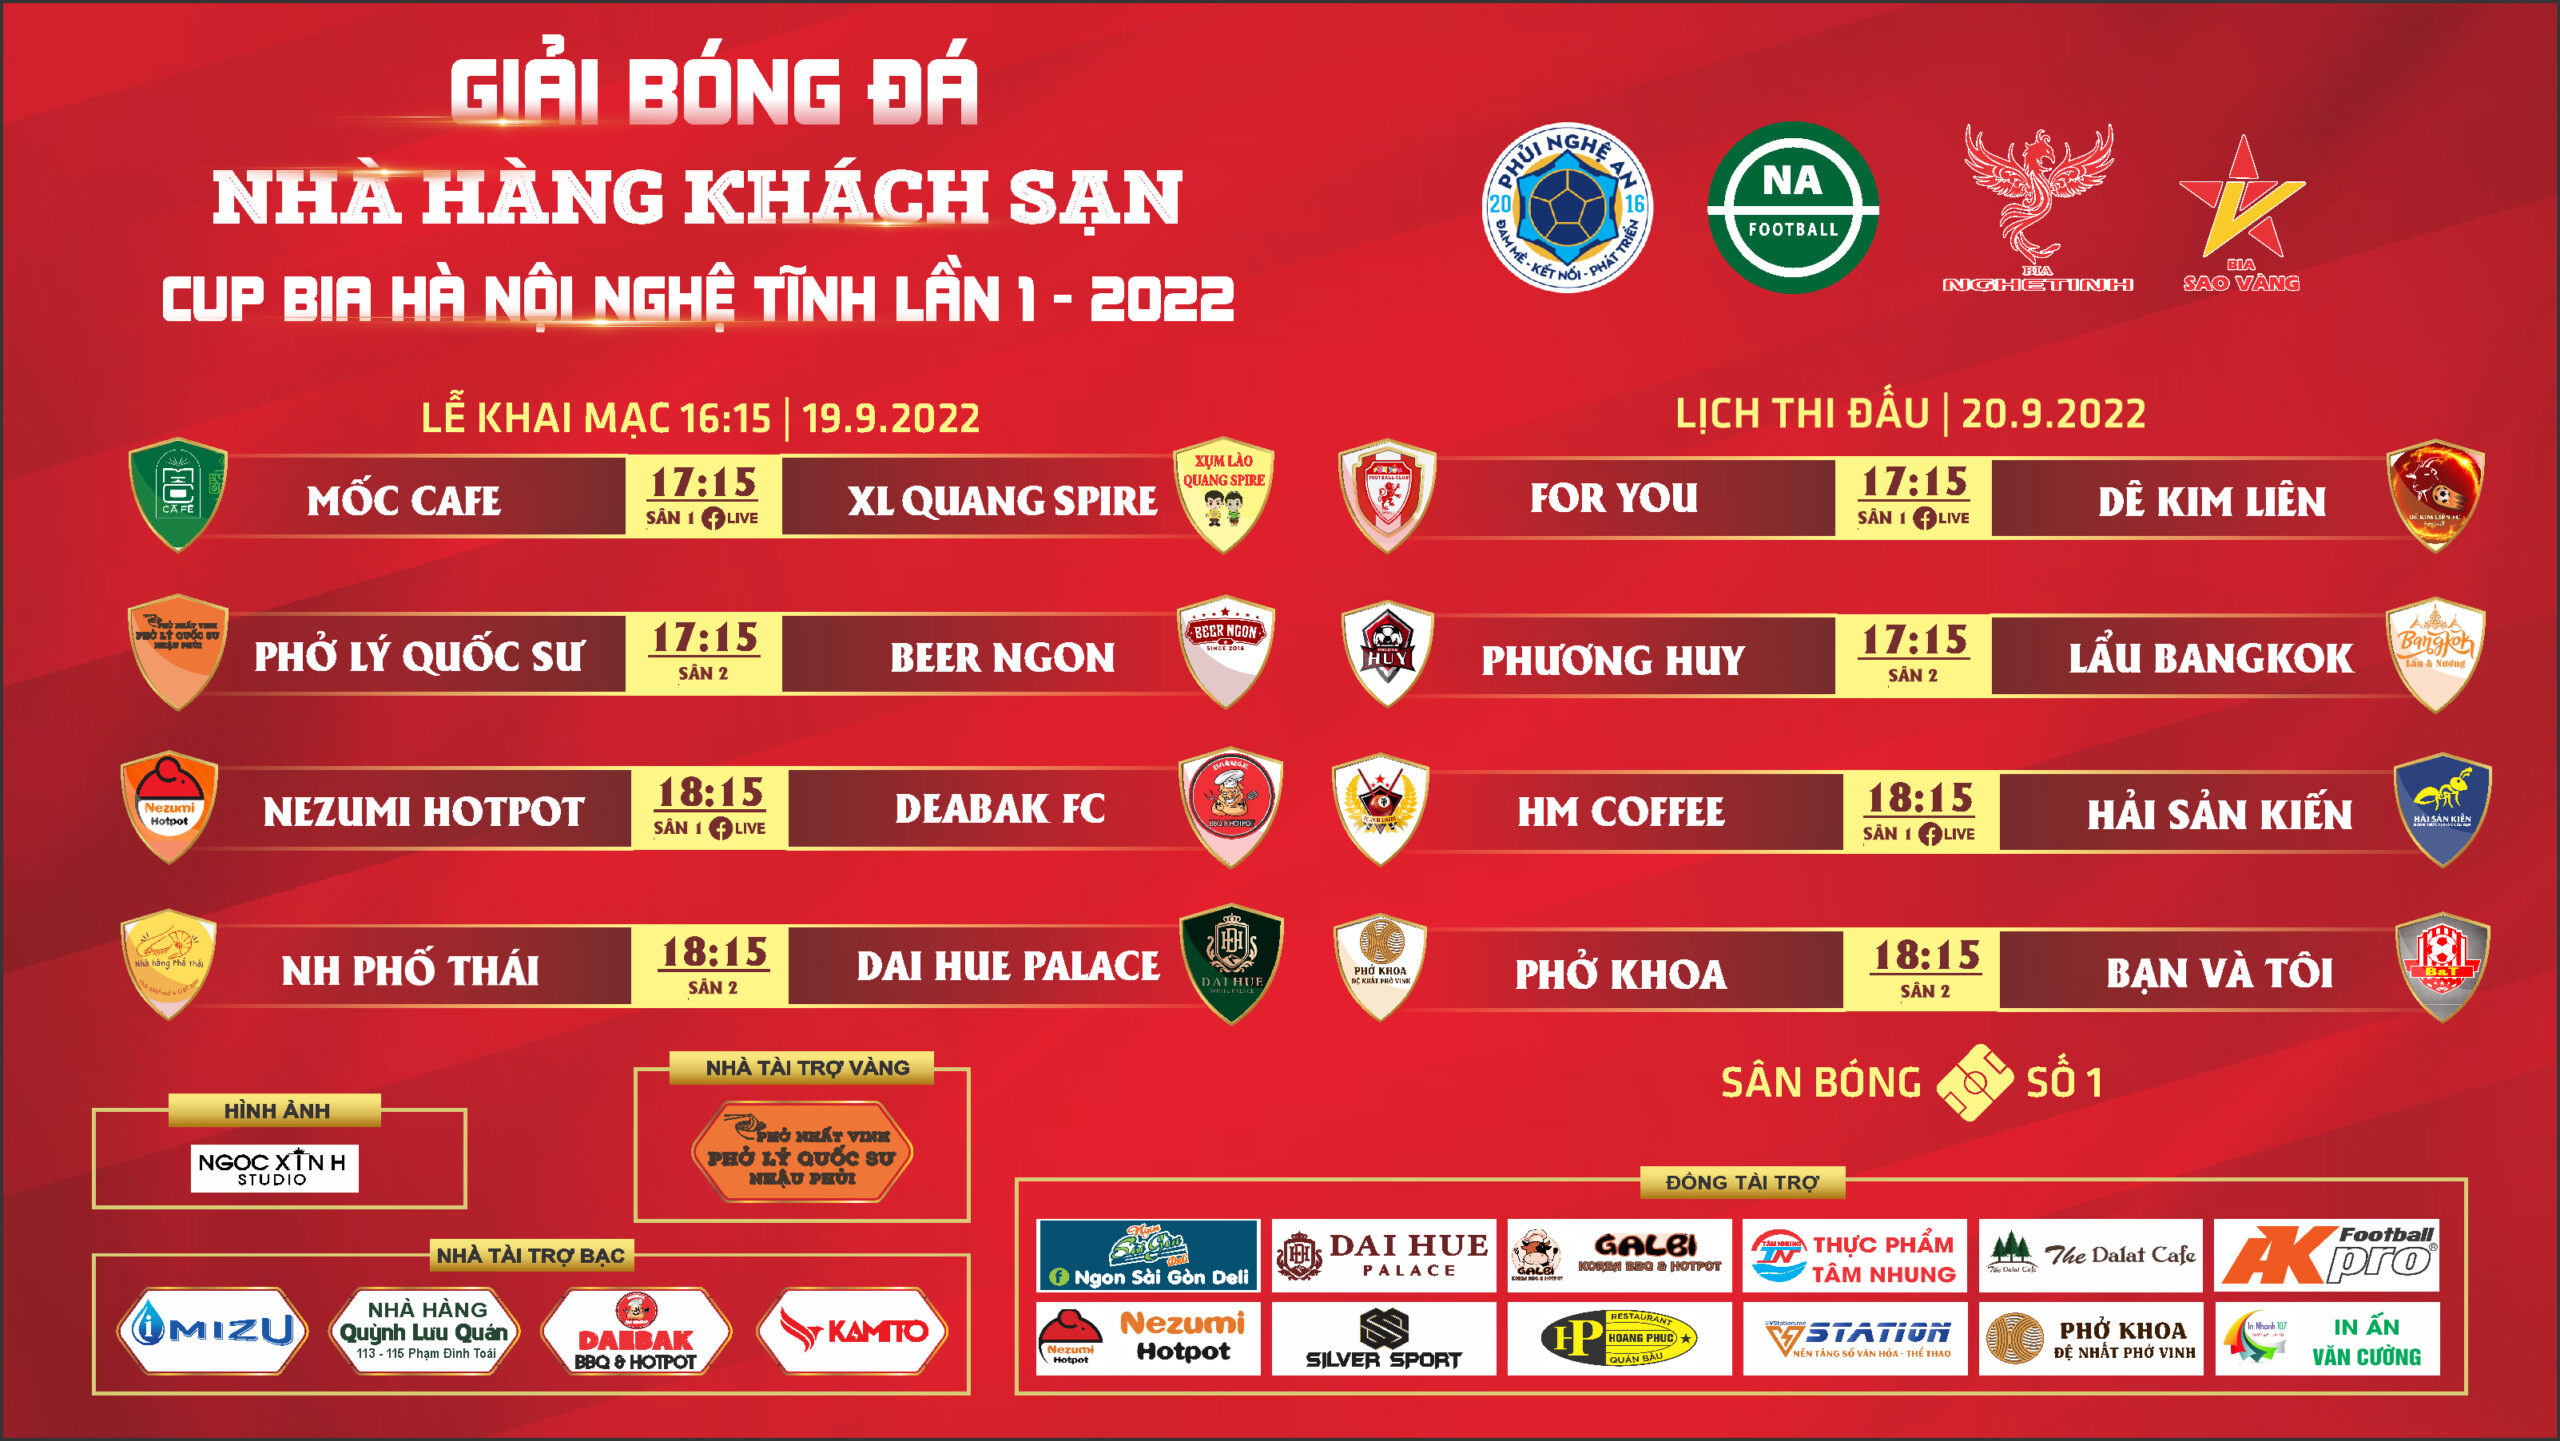 Lịch thi đấu vòng 1 Giải bóng đá Nhà Hàng Khách Sạn cúp Bia Hà Nội-Nghệ Tĩnh S1 – 2022 ngày 19/9